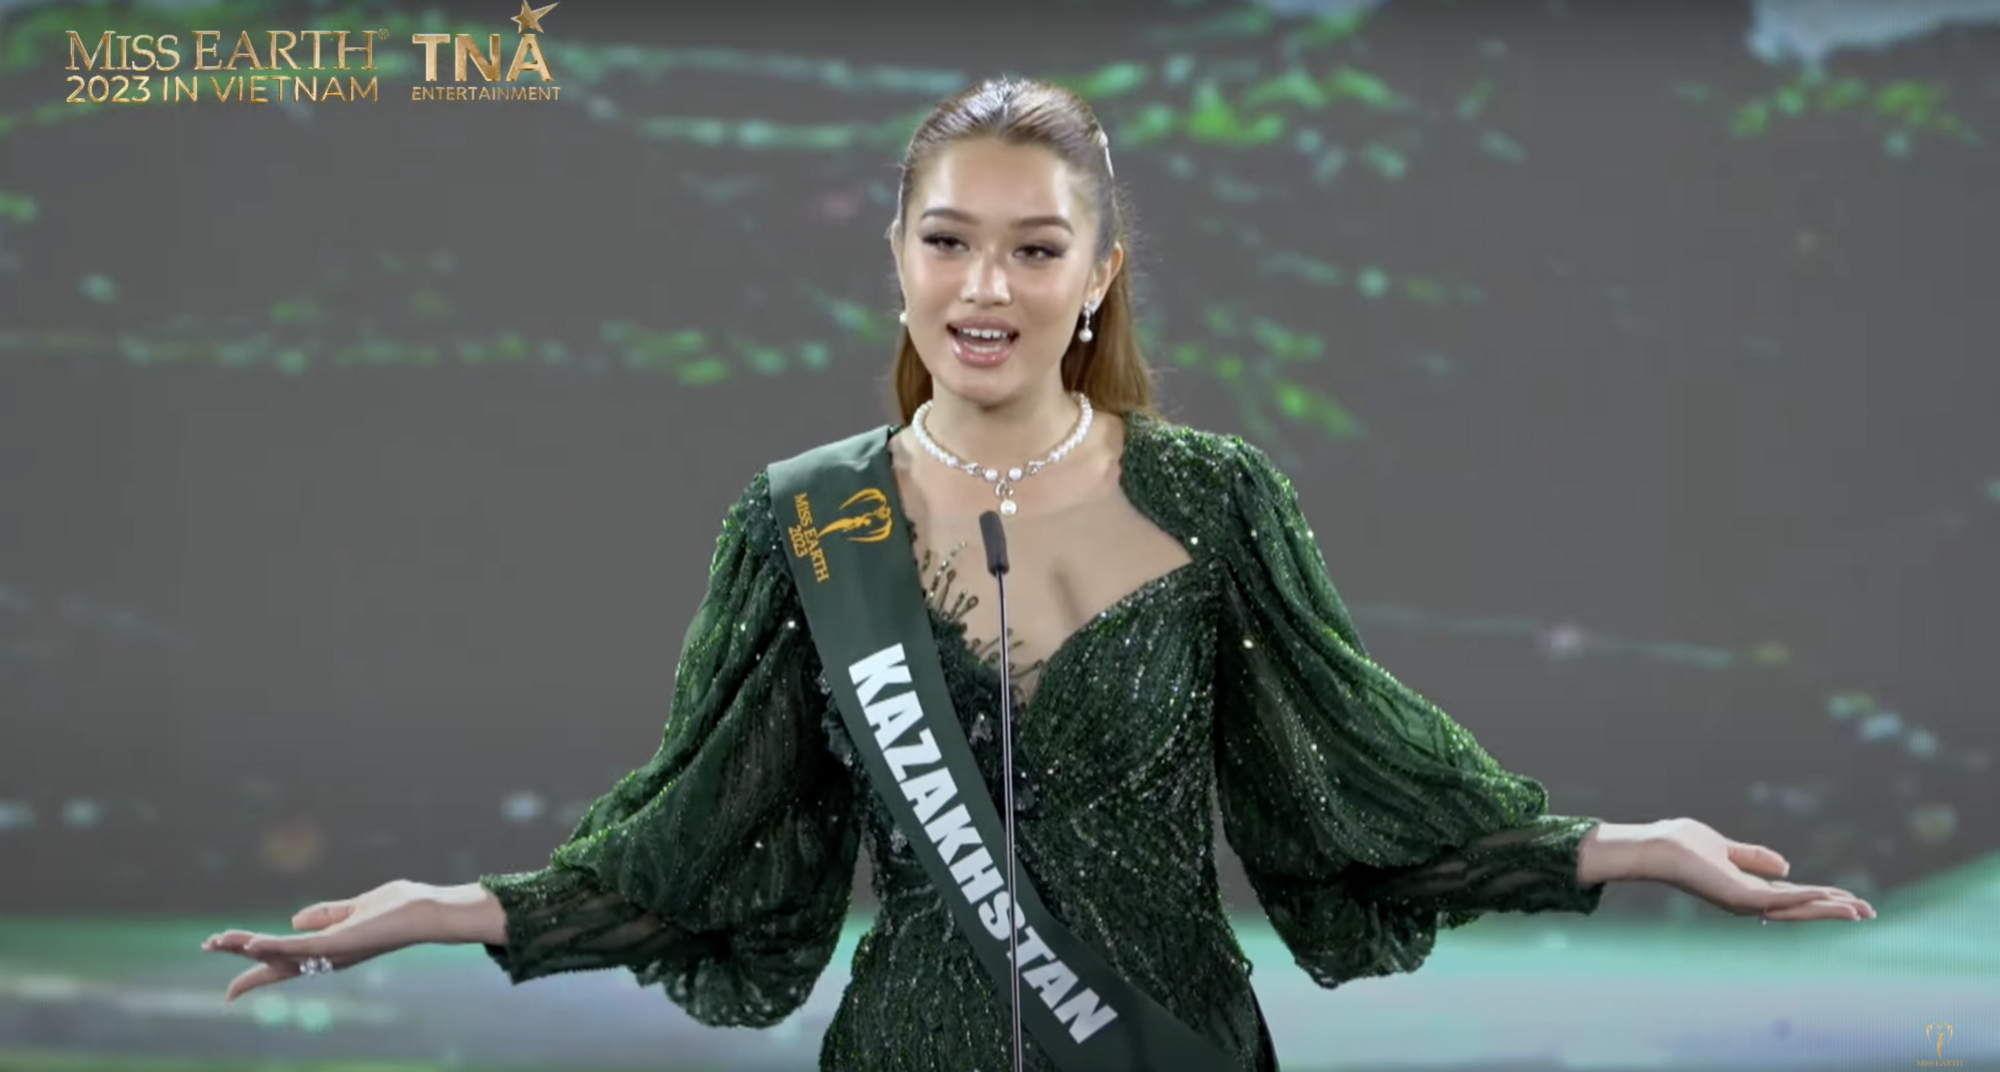 Учасниця з Казахстану, перекладач та ведуча потрапили в конфуз на "Міс Земля 2023" через російську мову. Відео